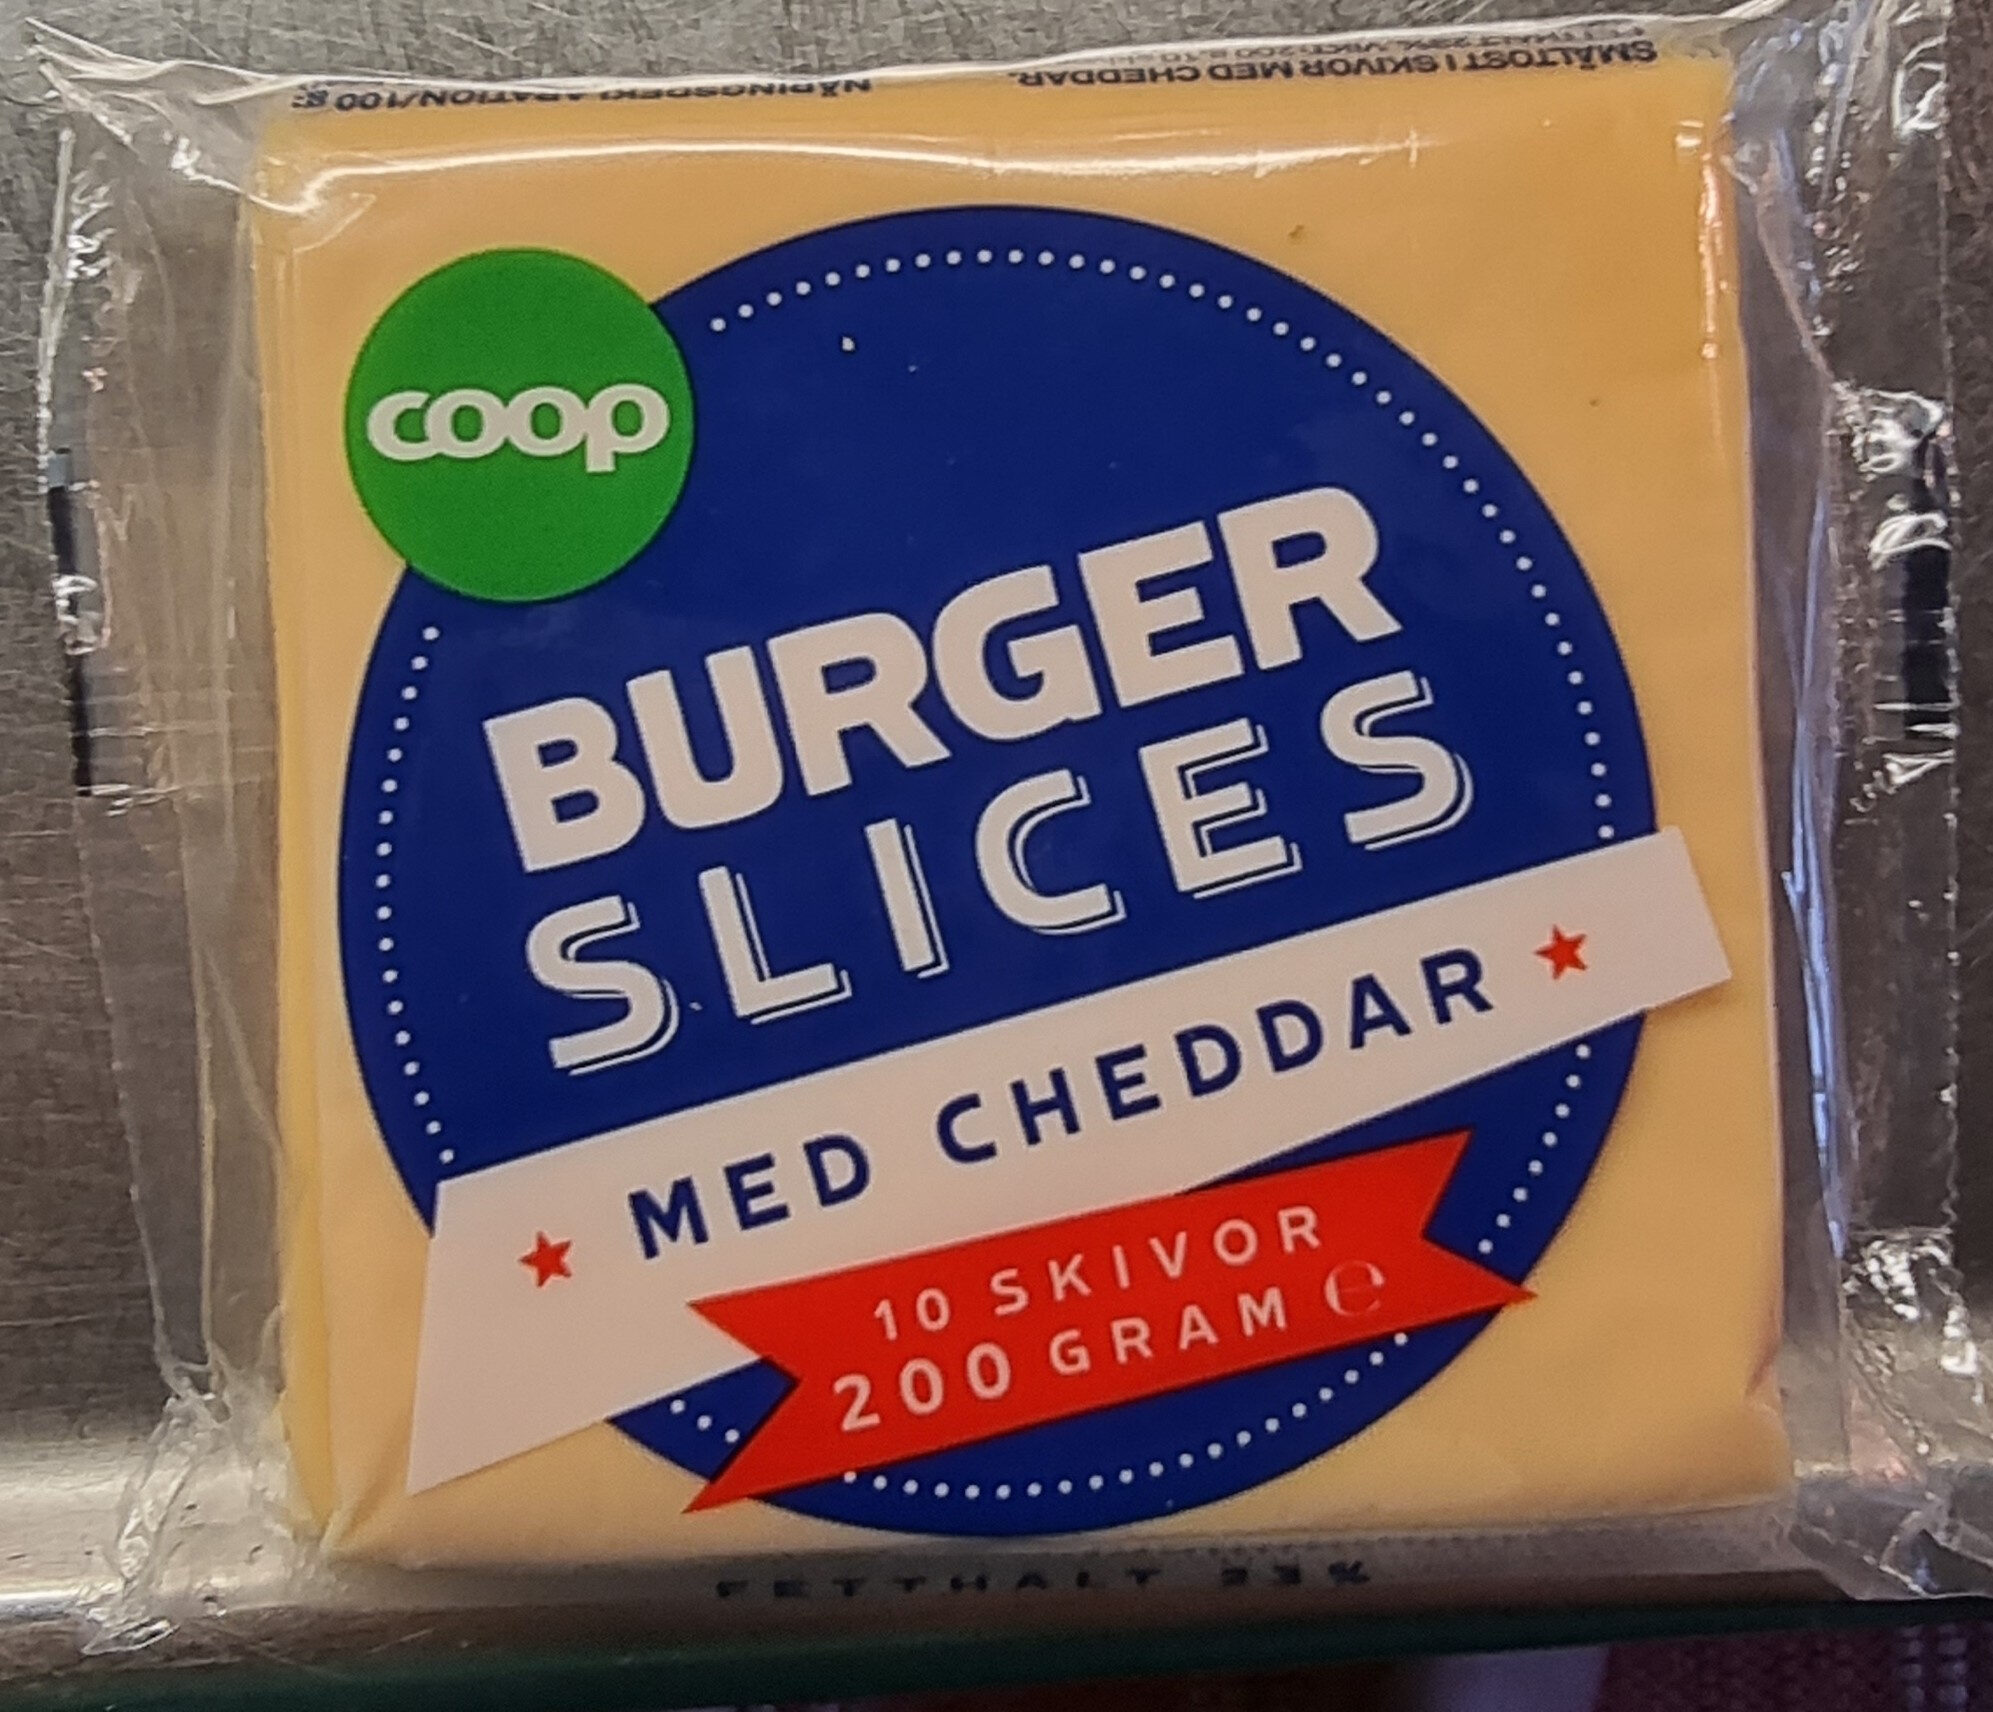 Burger slices med cheddar - Produkt